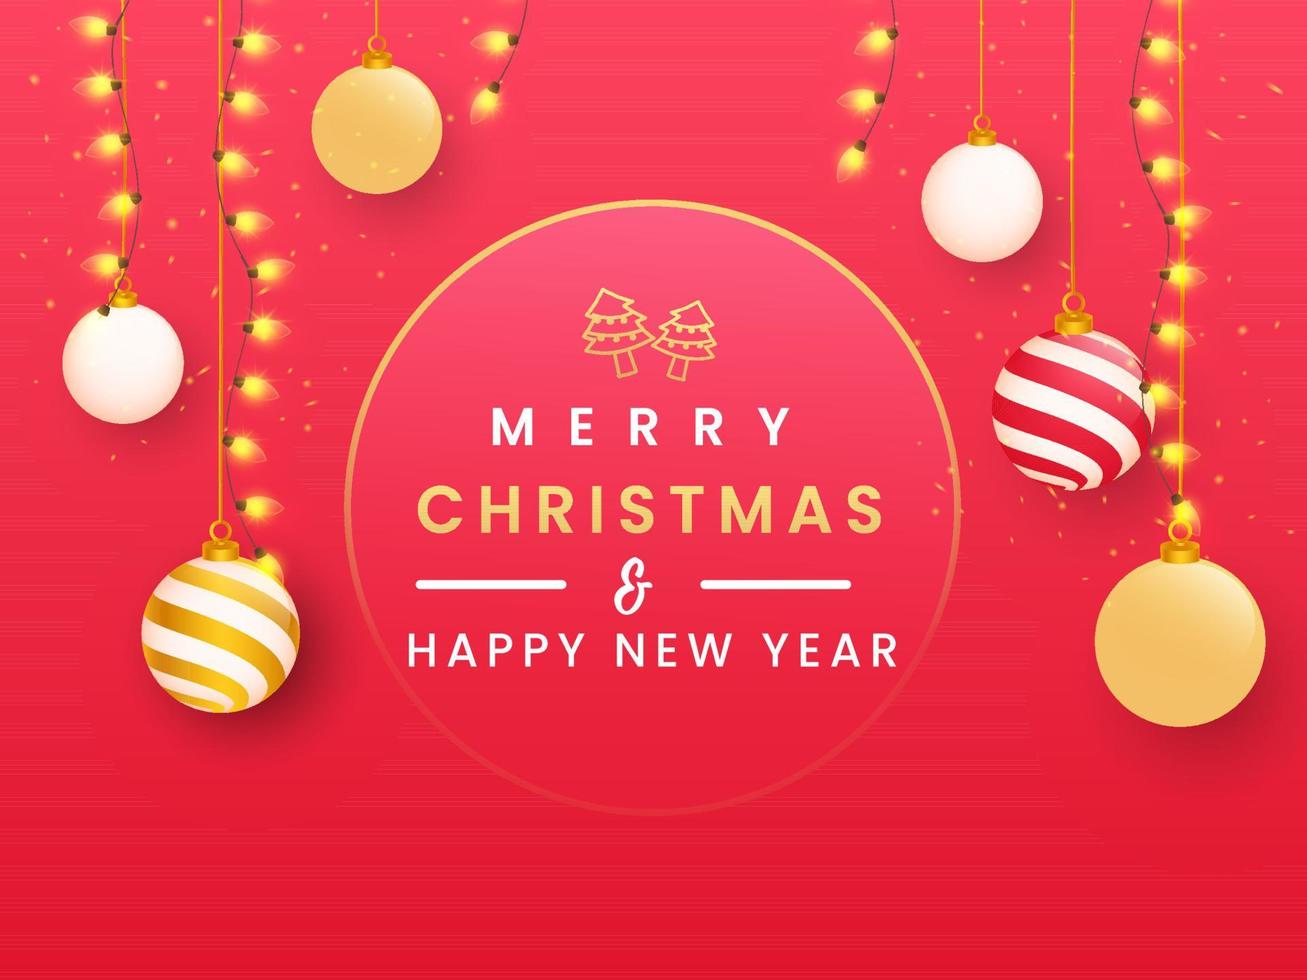 fröhlich Weihnachten glücklich Neu Jahr Text mit Weihnachten Bäume, hängend 3d Kugeln und Beleuchtung Girlanden dekoriert rot Hintergrund. vektor